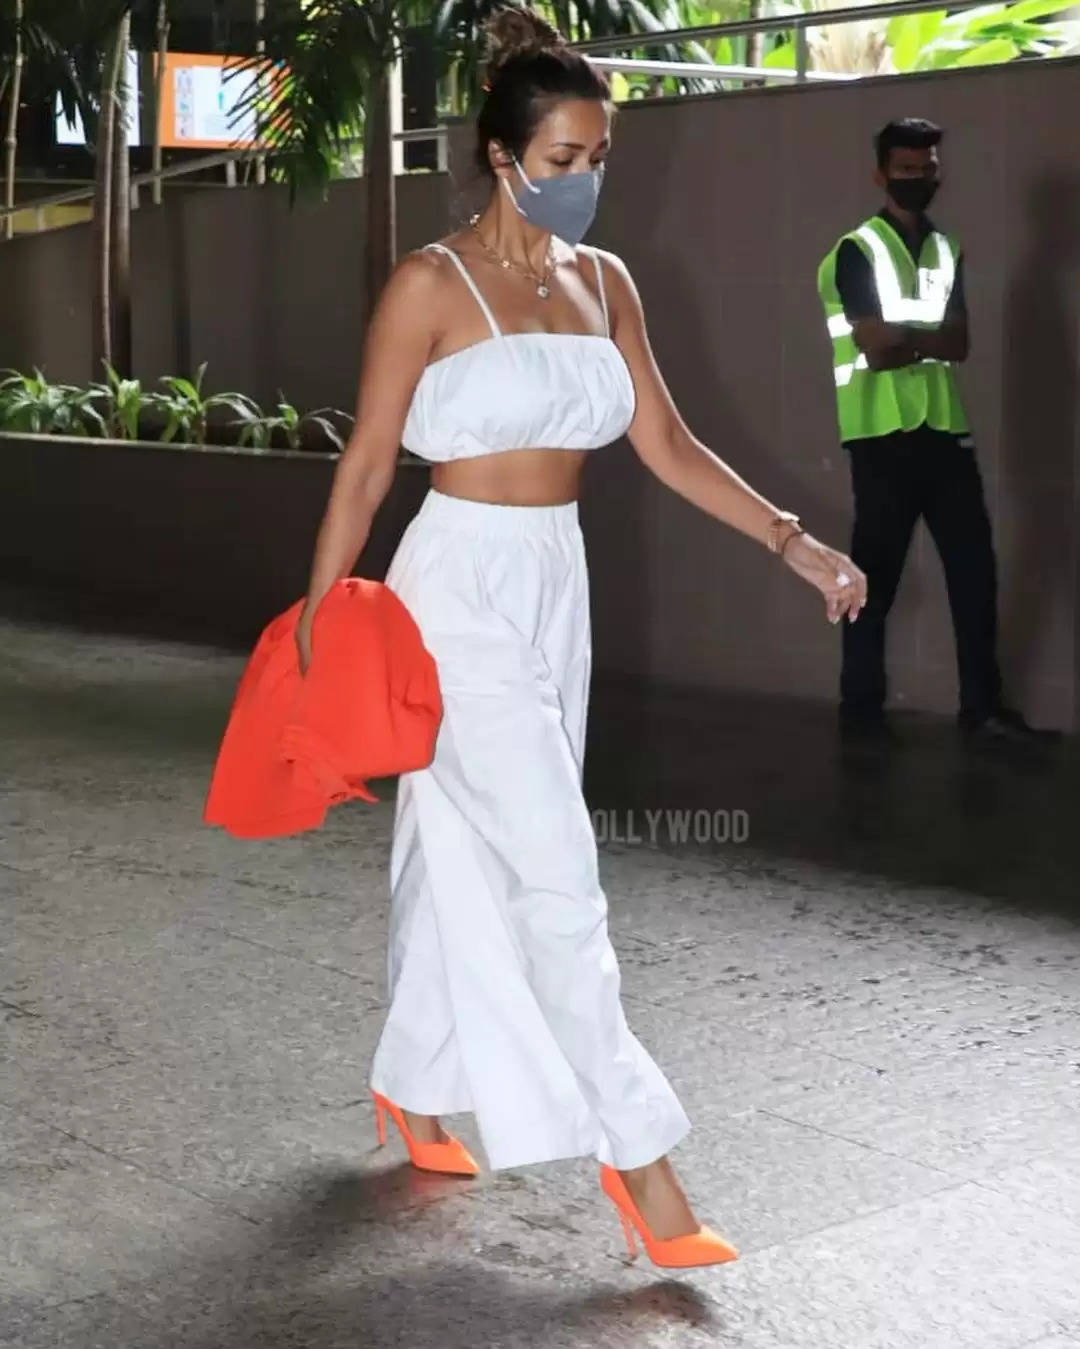 व्हाइट ड्रेस में बेहद हॉट लग रही है मलाइका अरोड़ा, एयरपोर्ट पर नजर आई